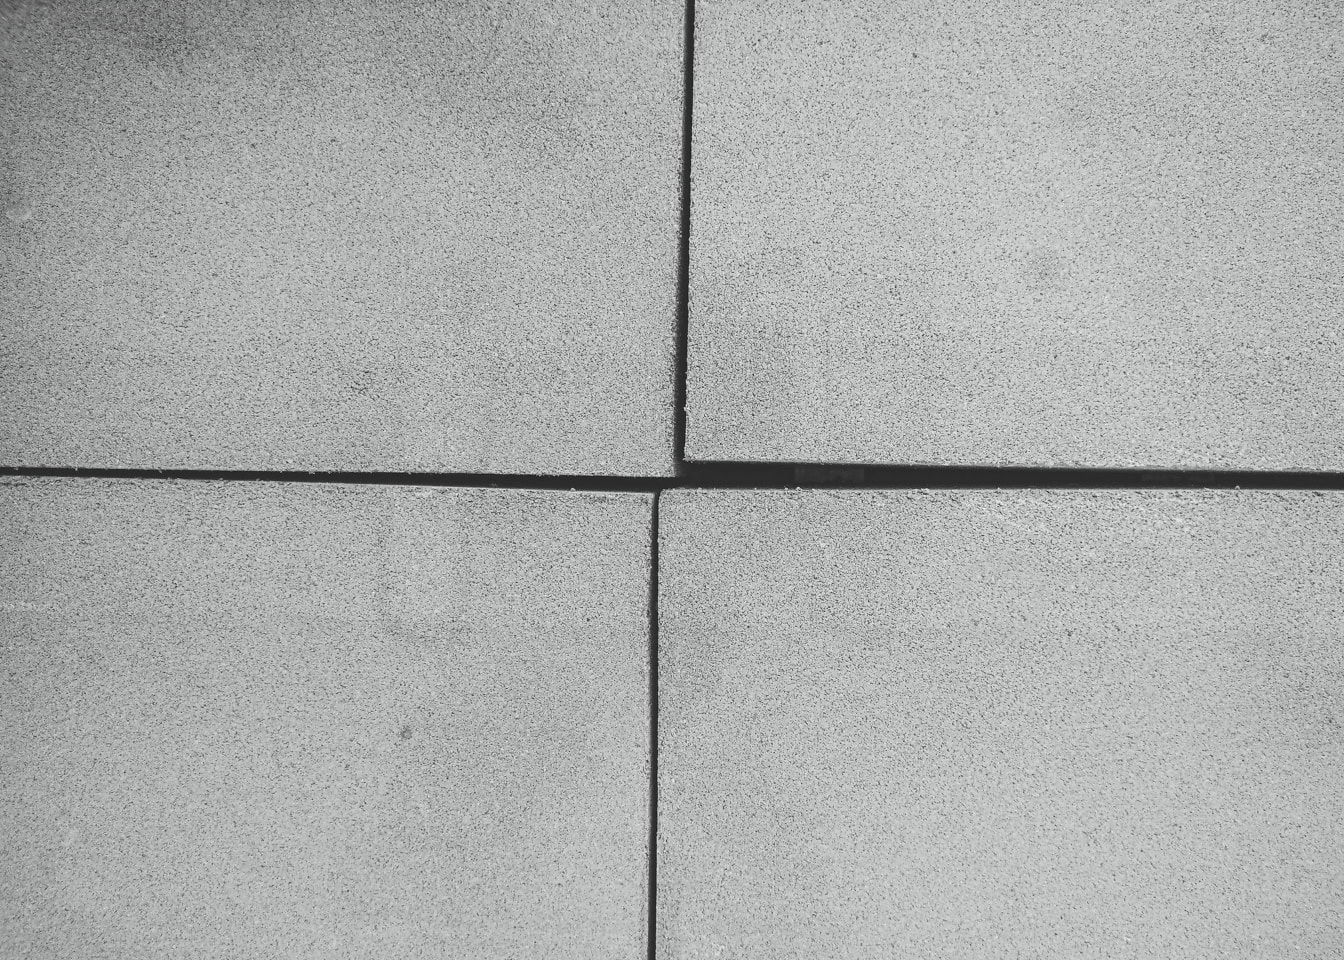 Zwart-witte textuur van vier concrete blokken